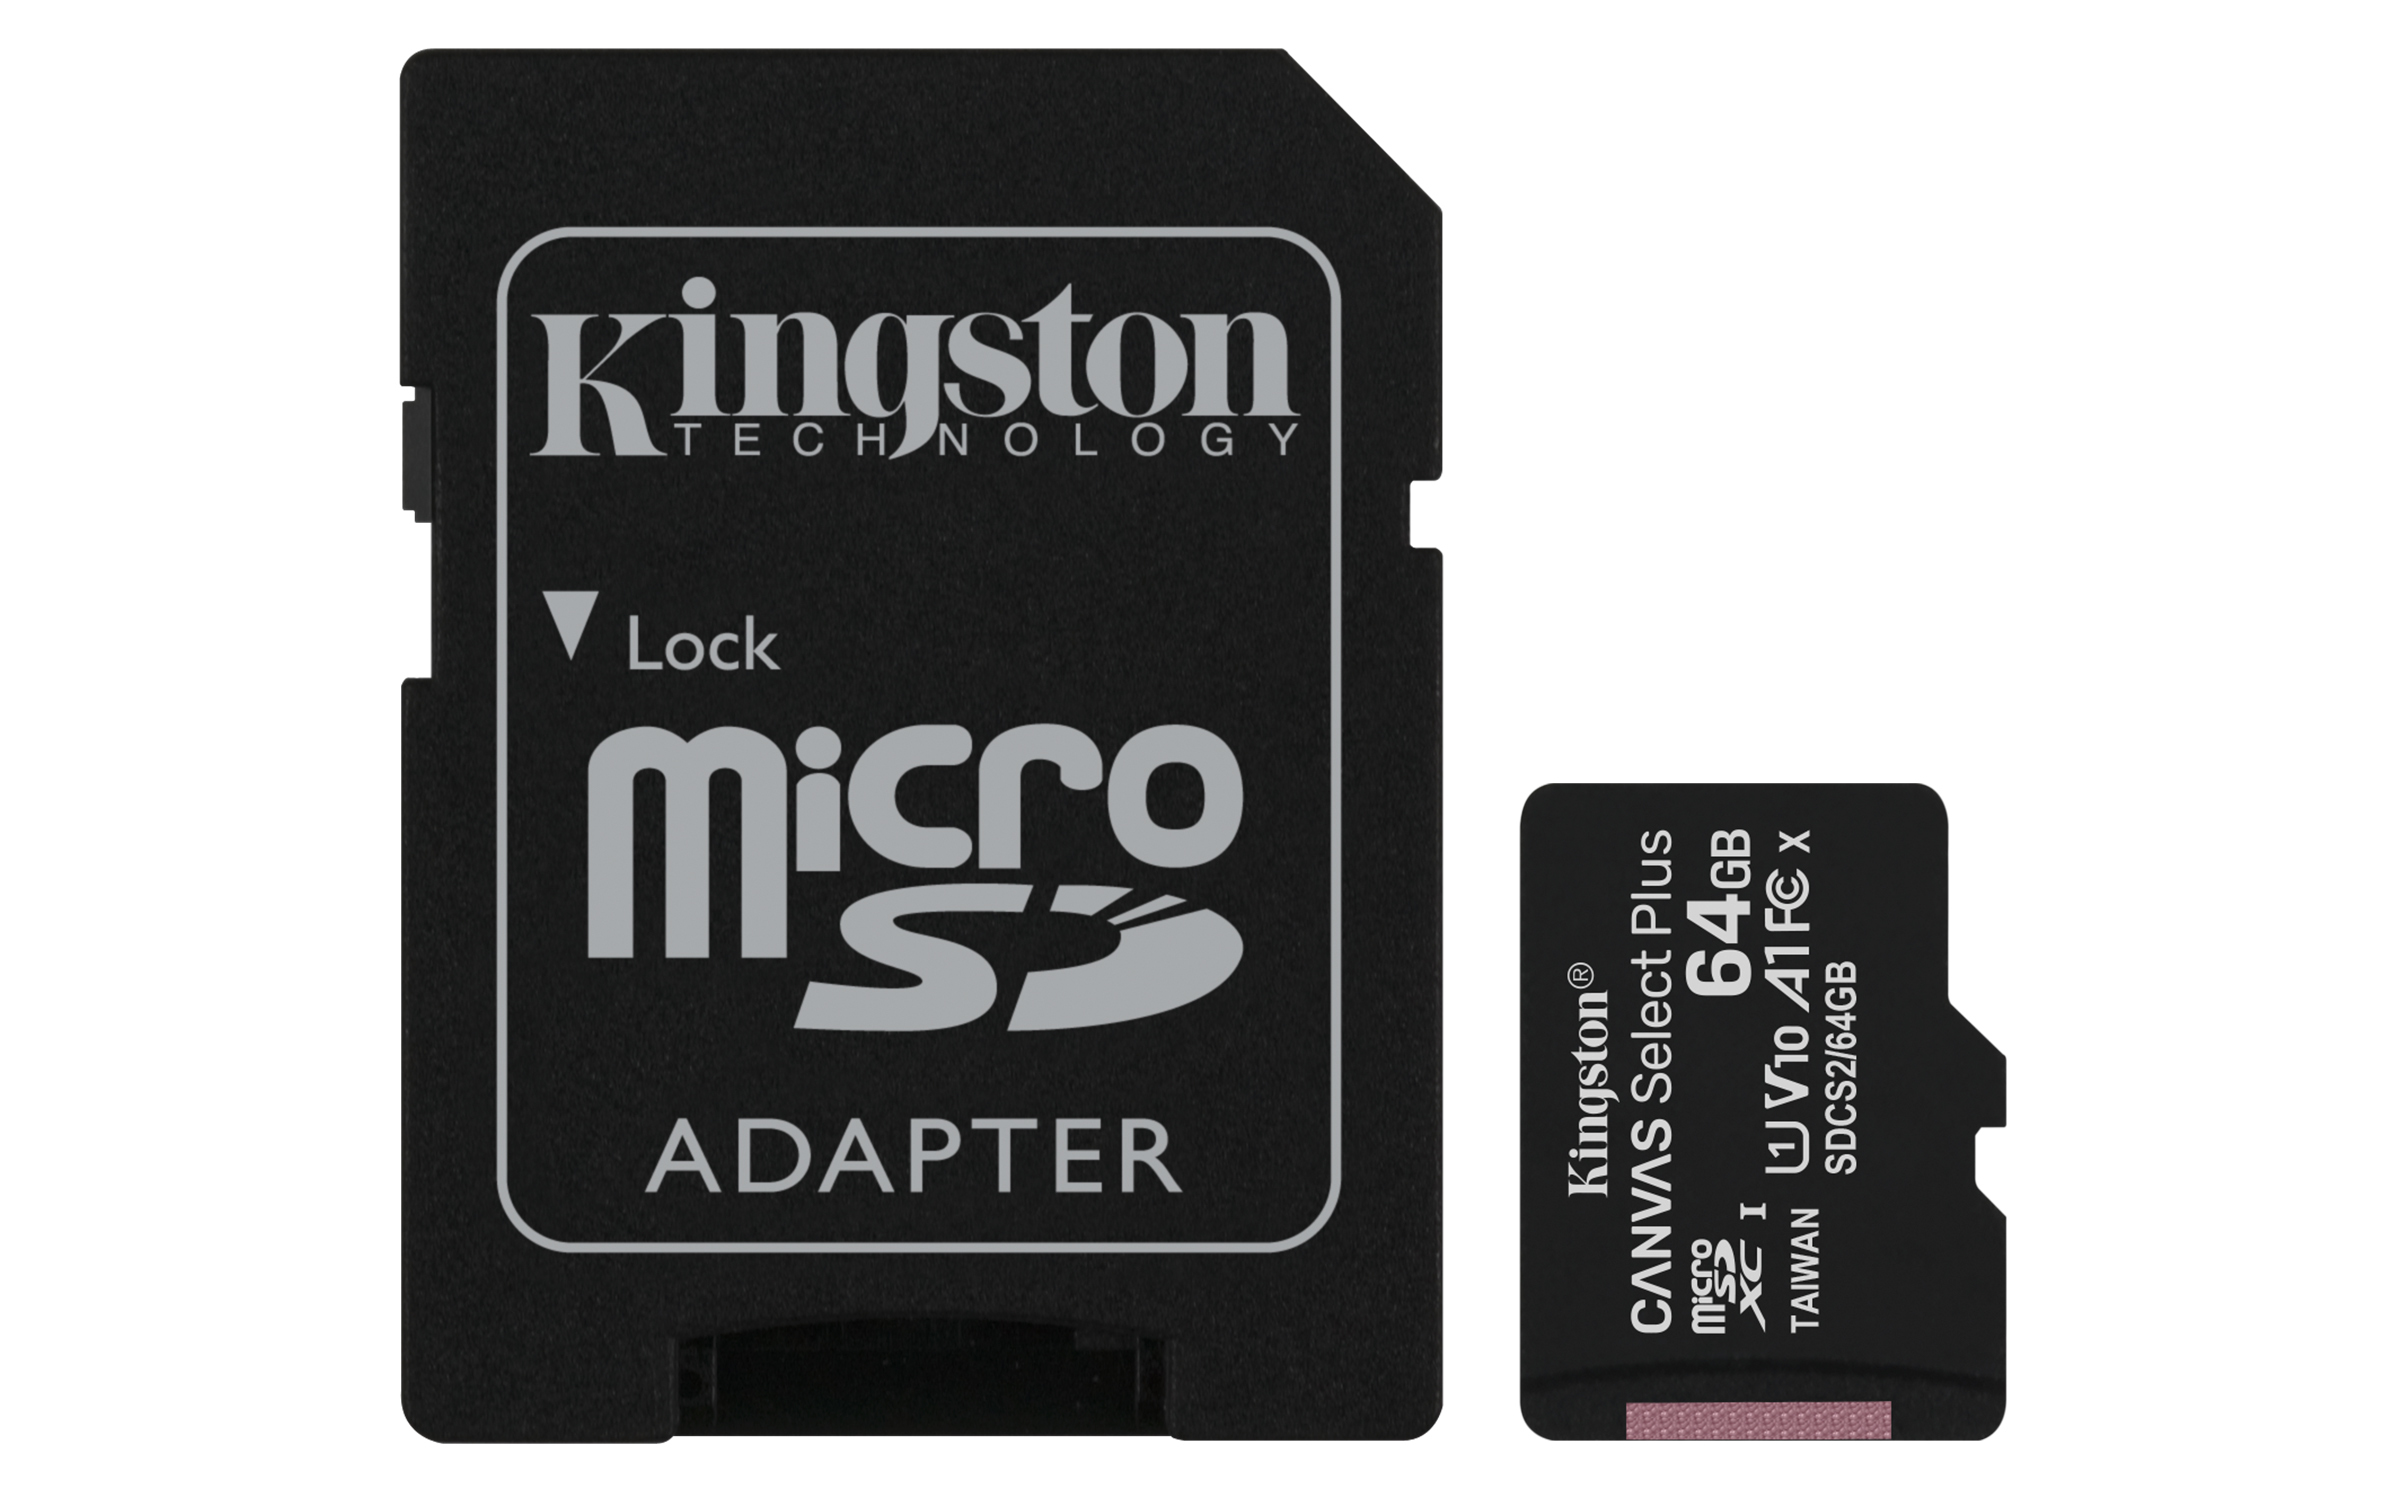 Kingston Micro SD SDCS264GB